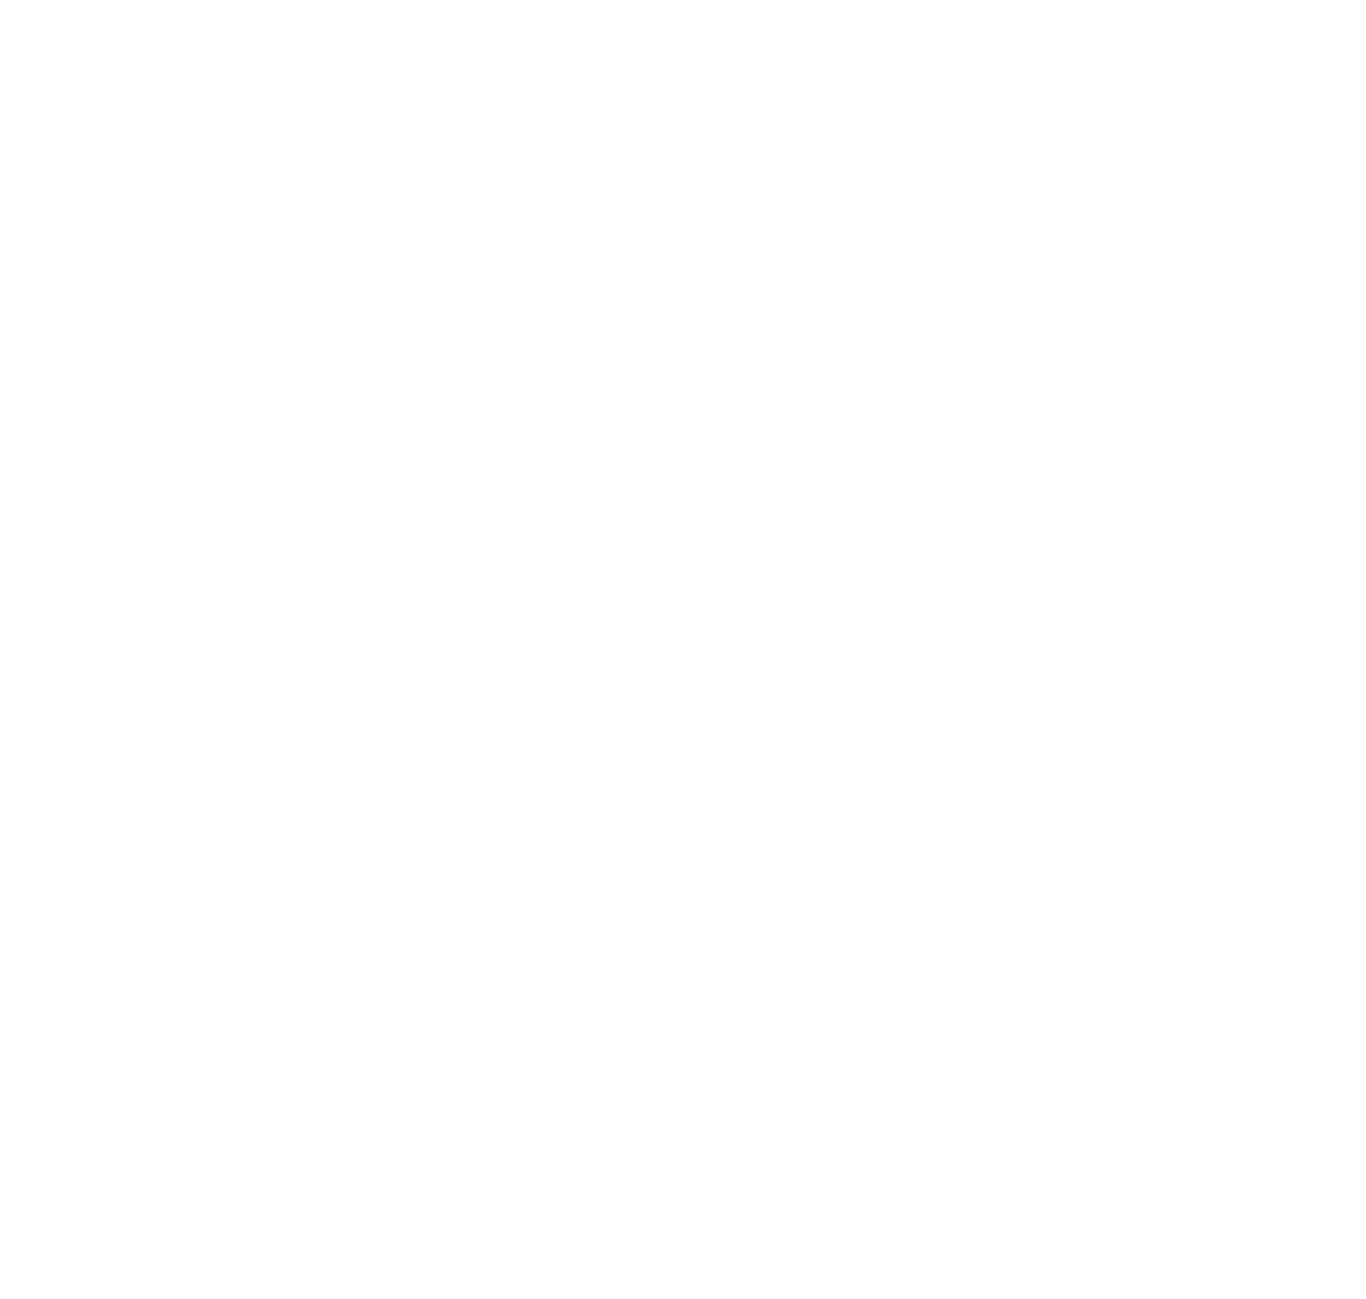 Planet Earth III logo